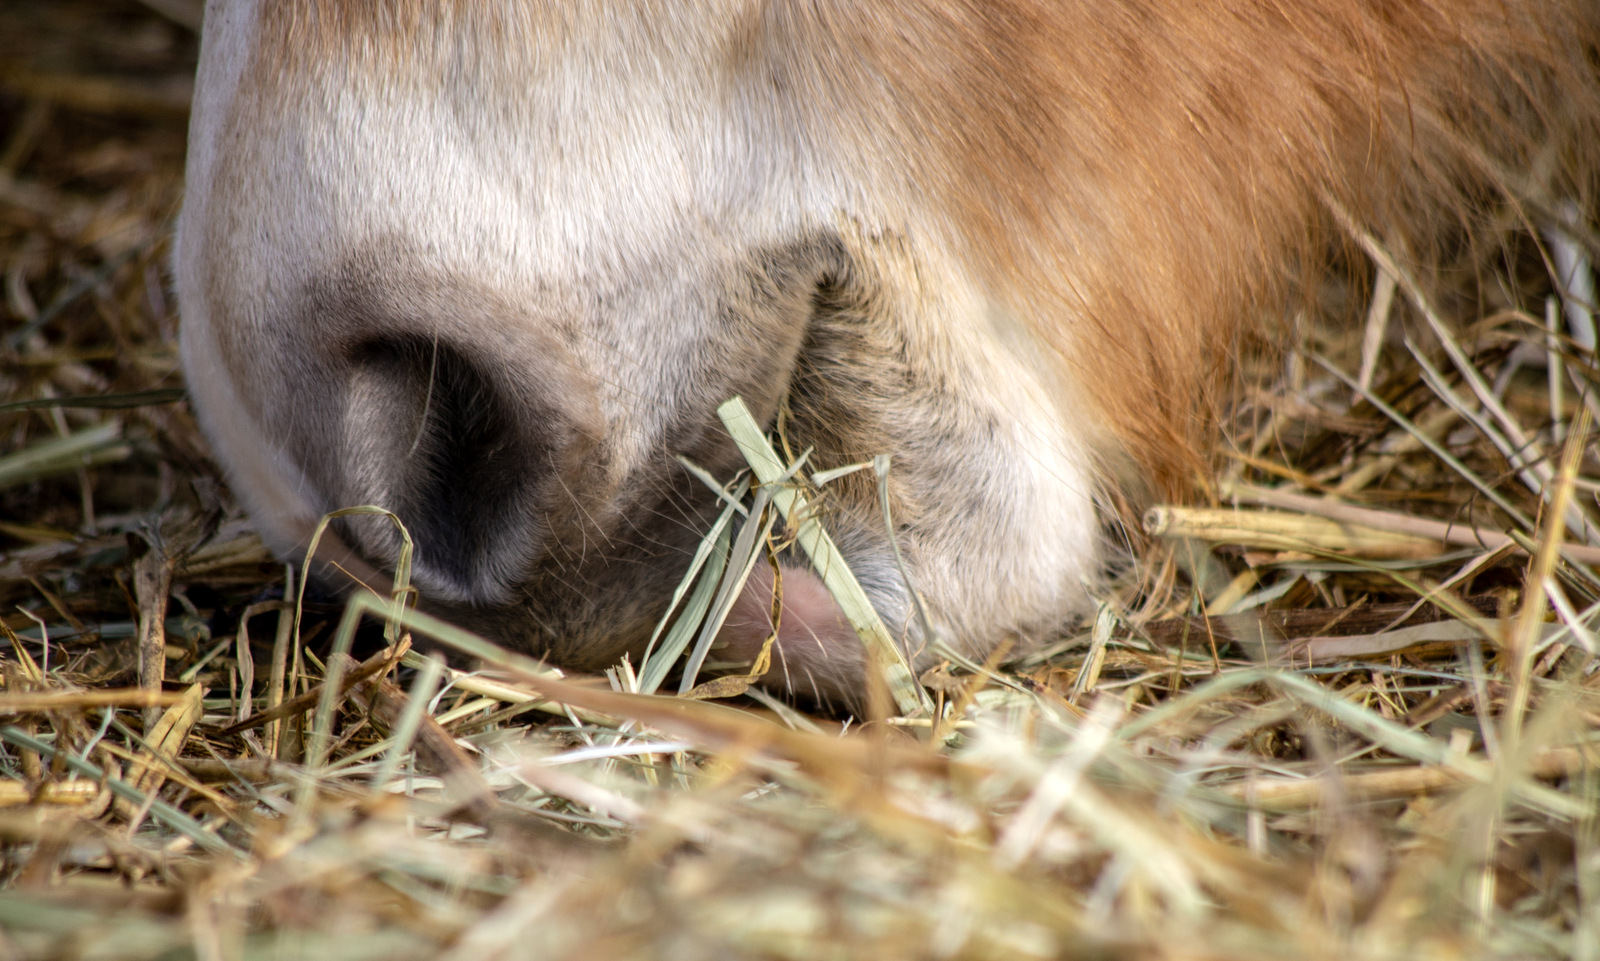 Sok lovat nem a szükségletei szerint etetnek. Bizonyos tápanyagok hiánya vagy túlkínálata befolyásolhatja a paták minőségét.